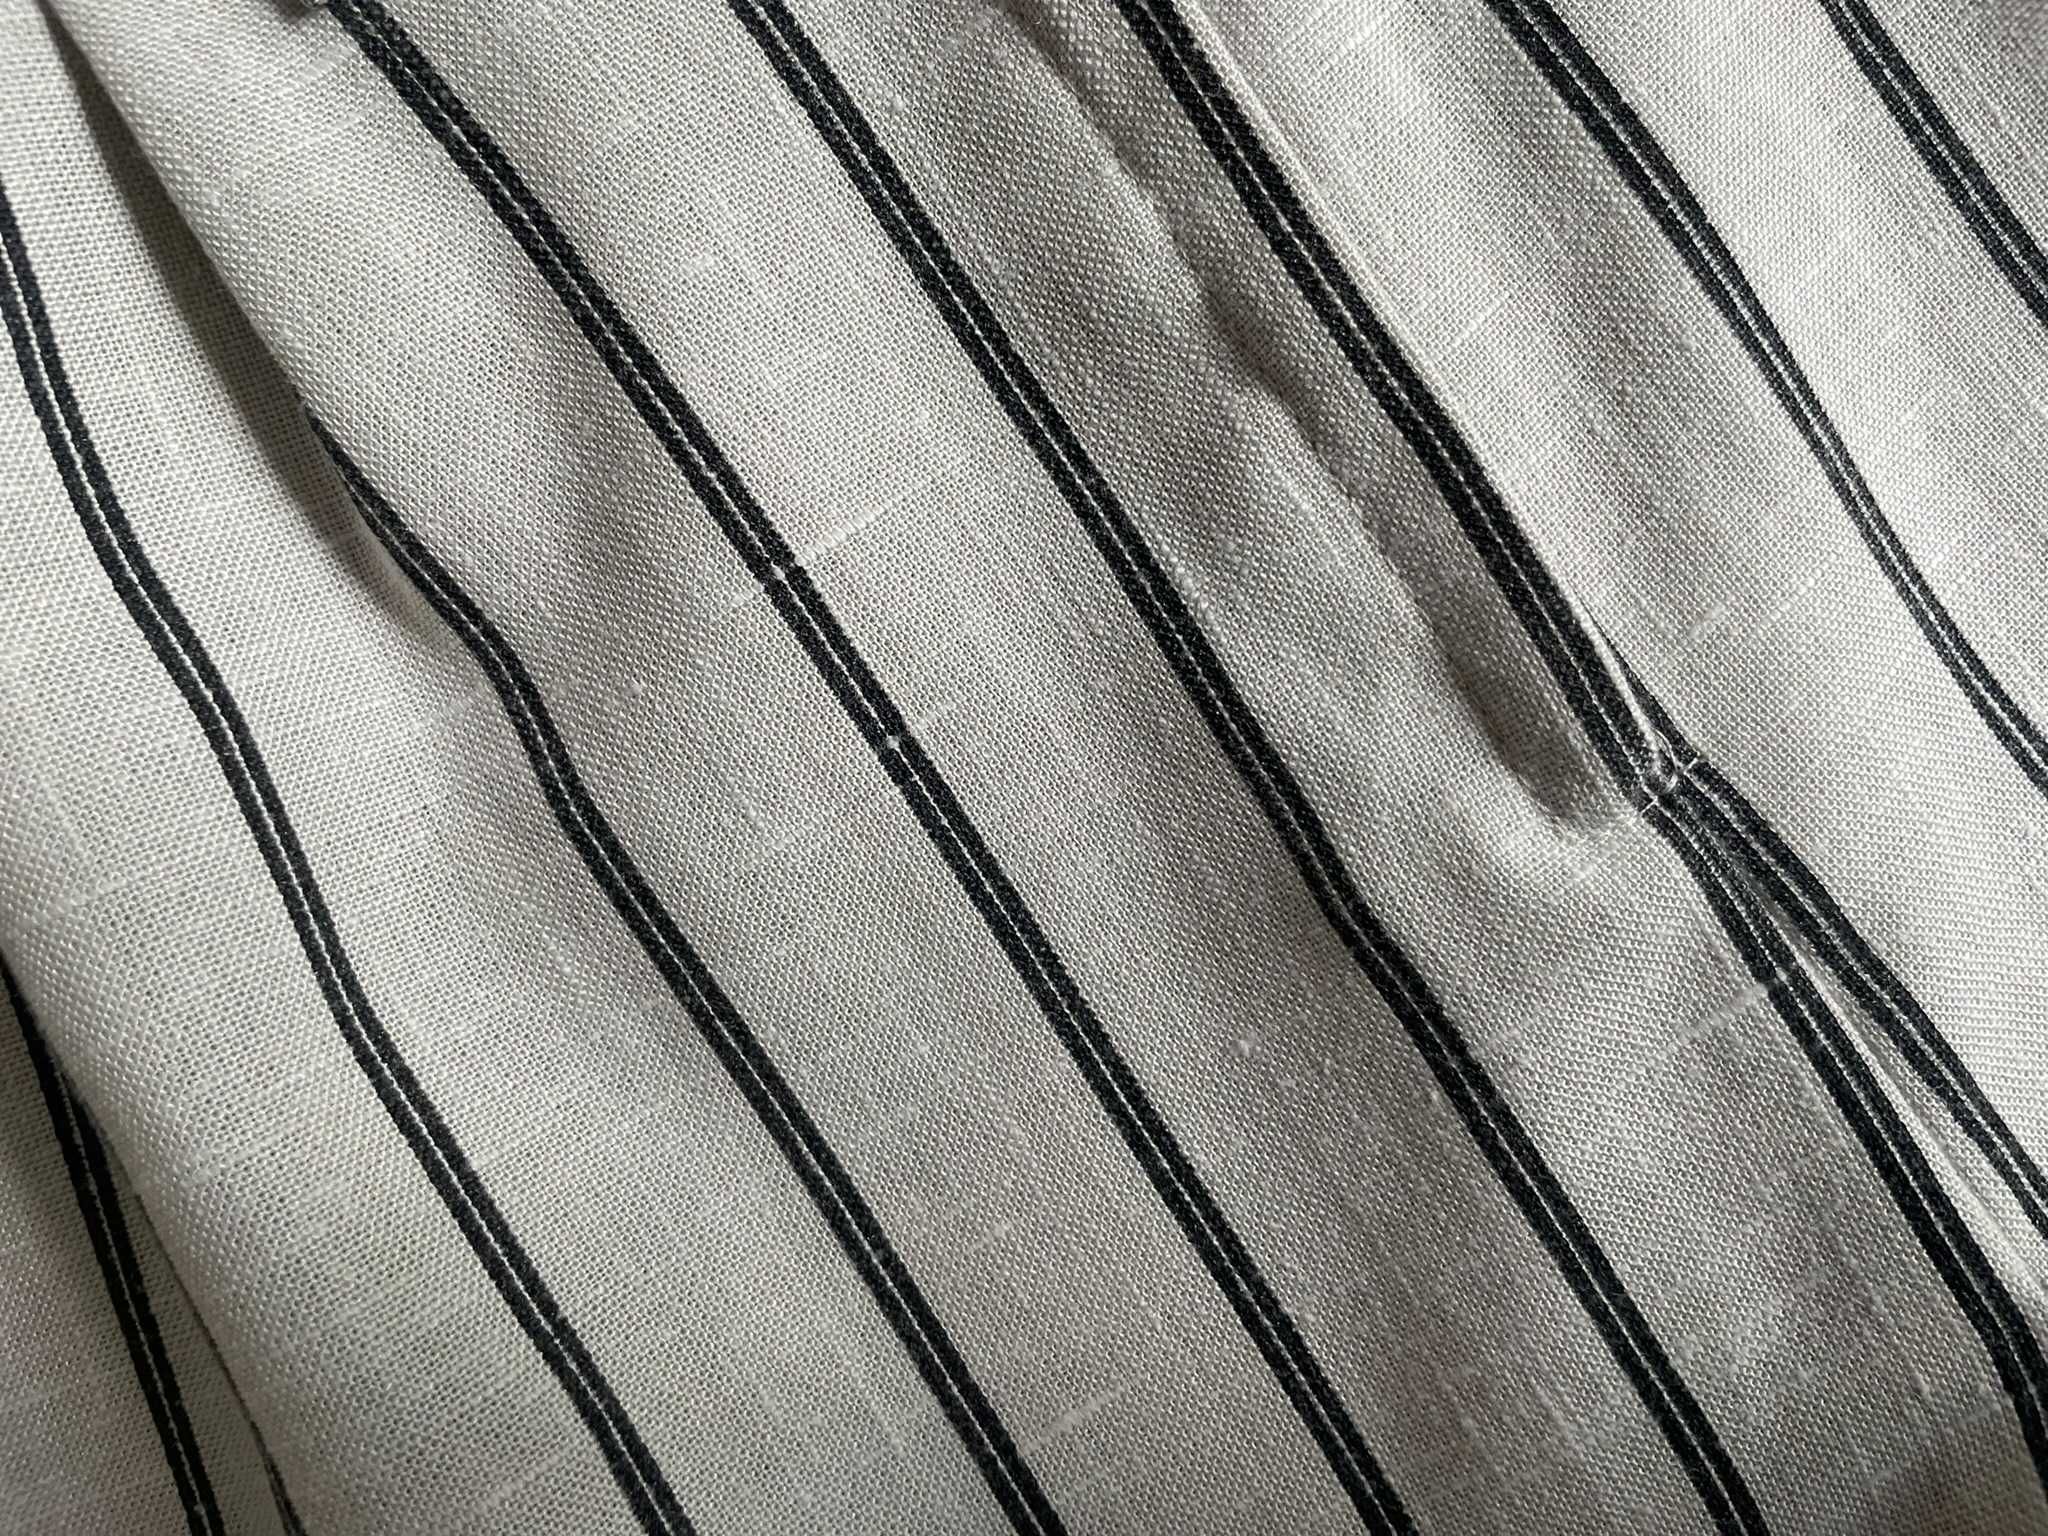 Szorty szare beżowe garniturowe paski eleganckie płócienne M 38